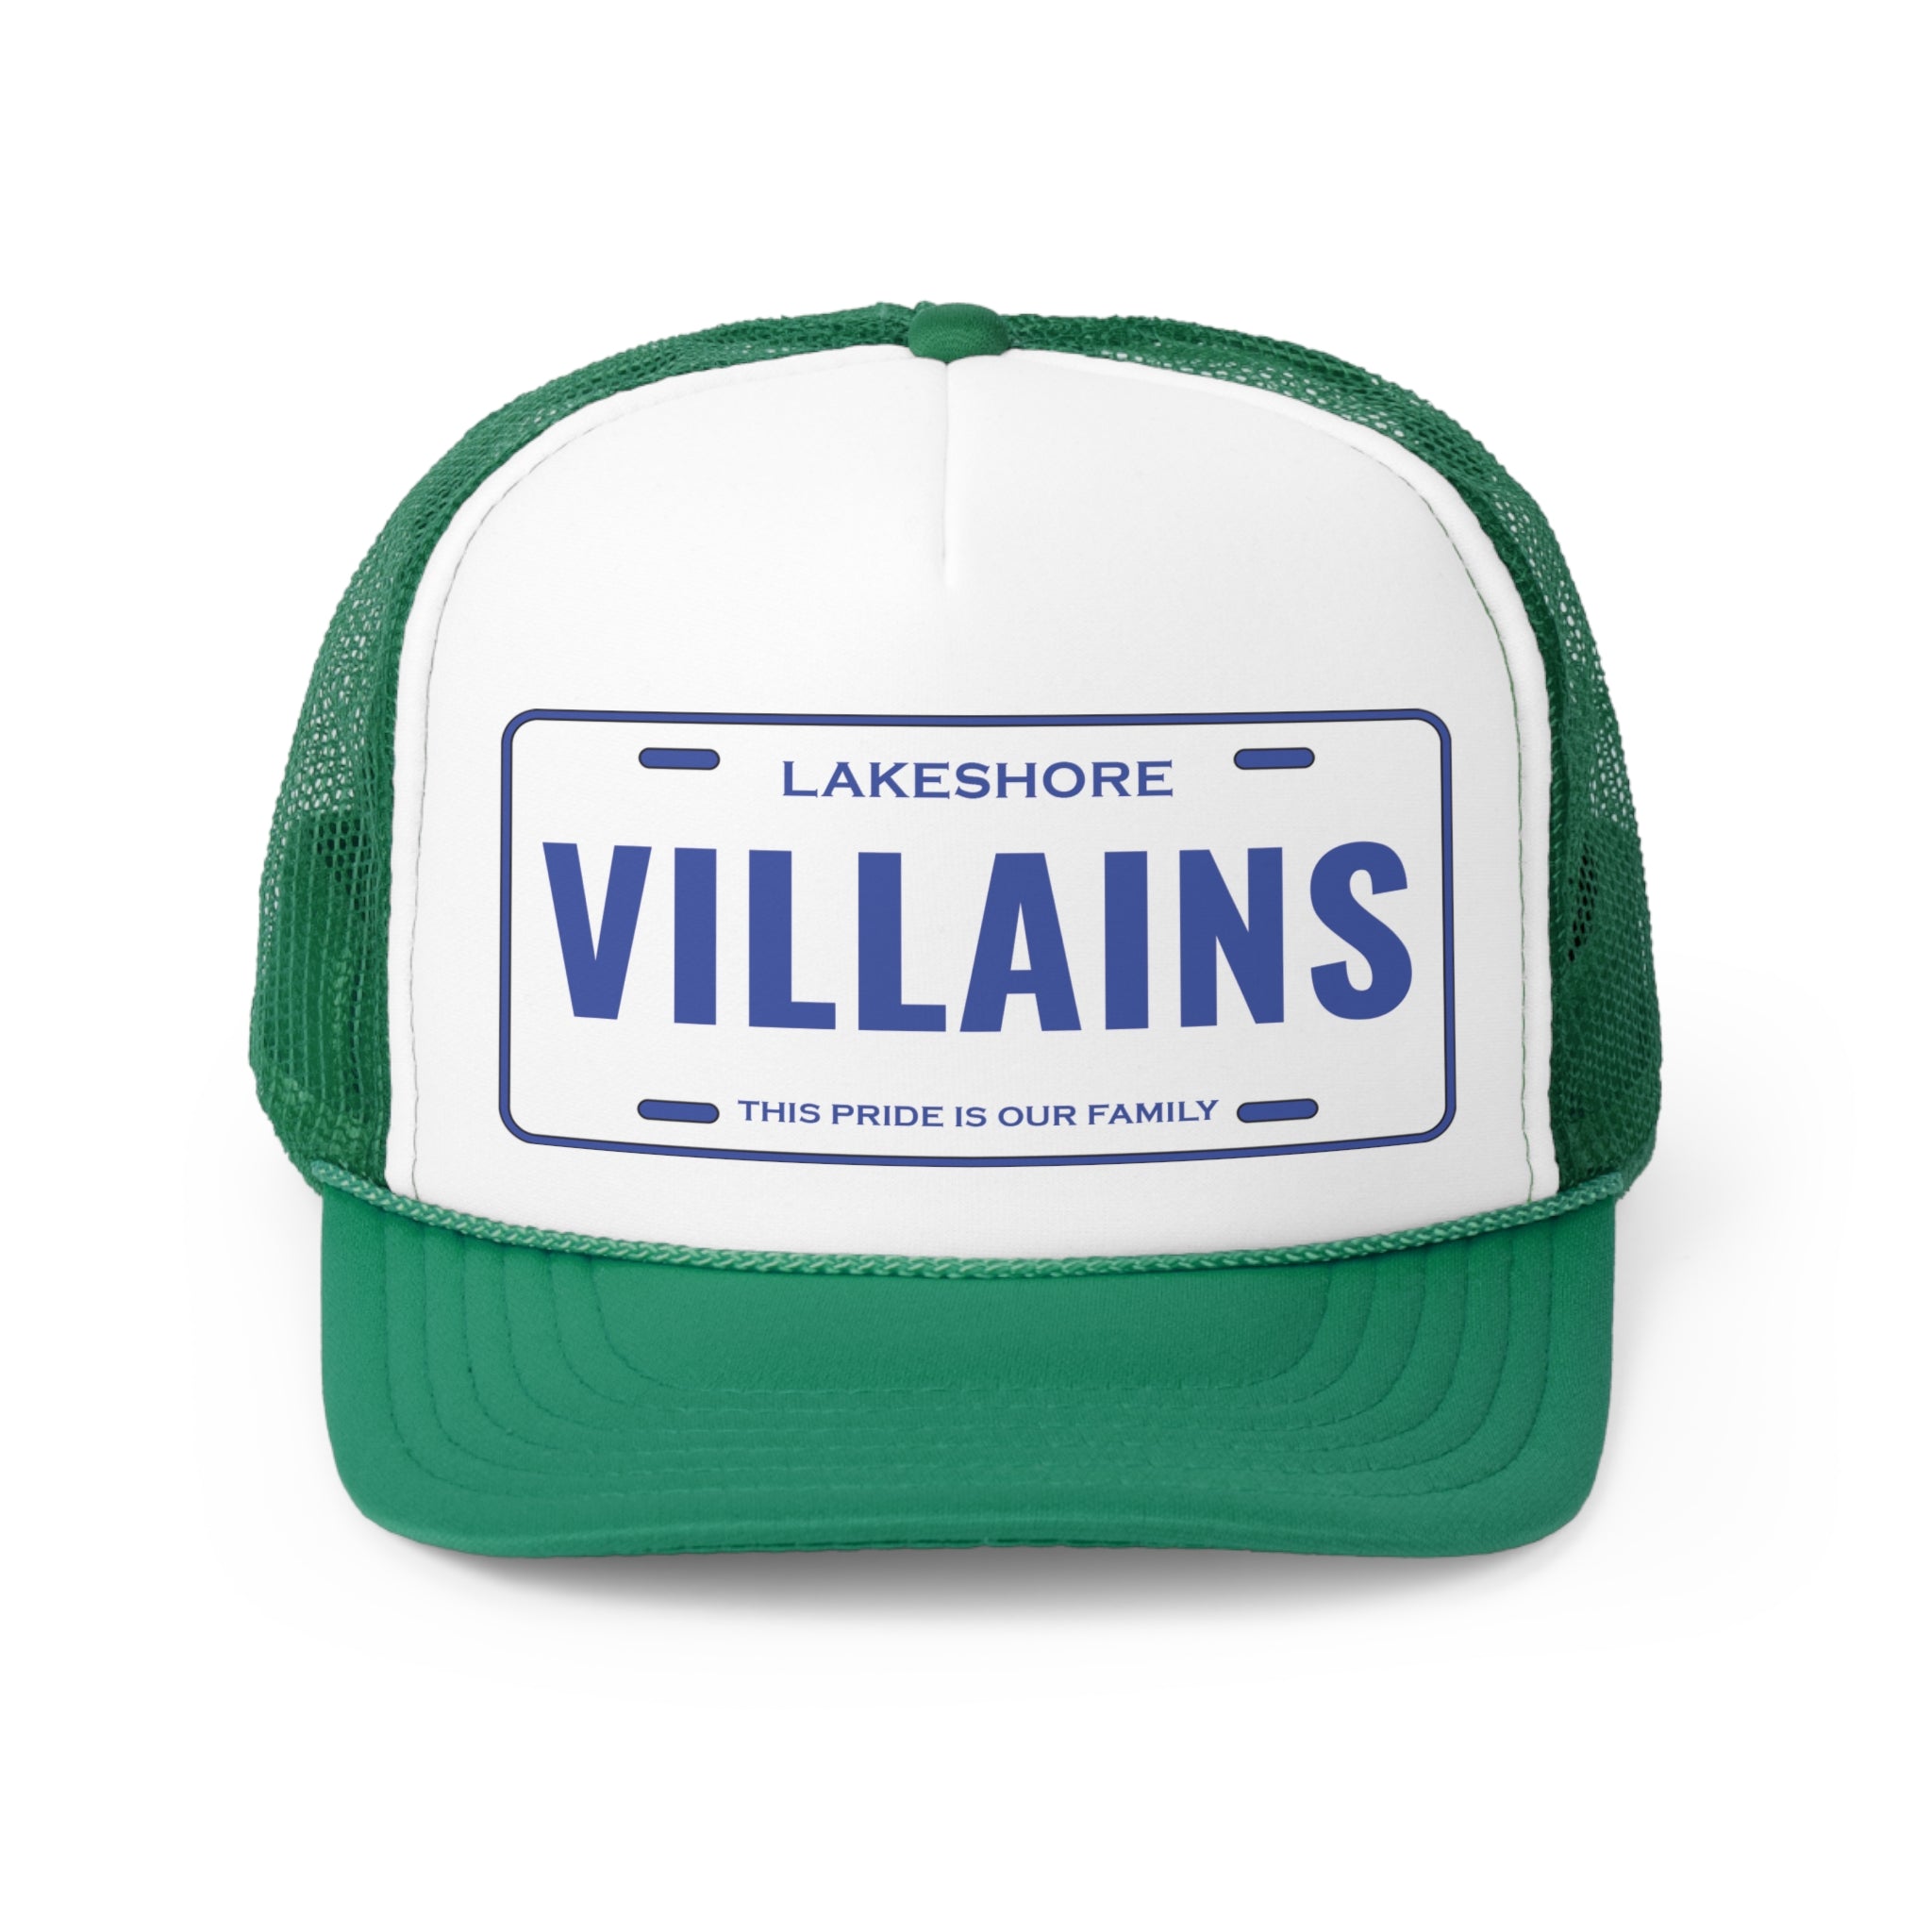 Lakeshore Villains Sublimated Trucker Caps